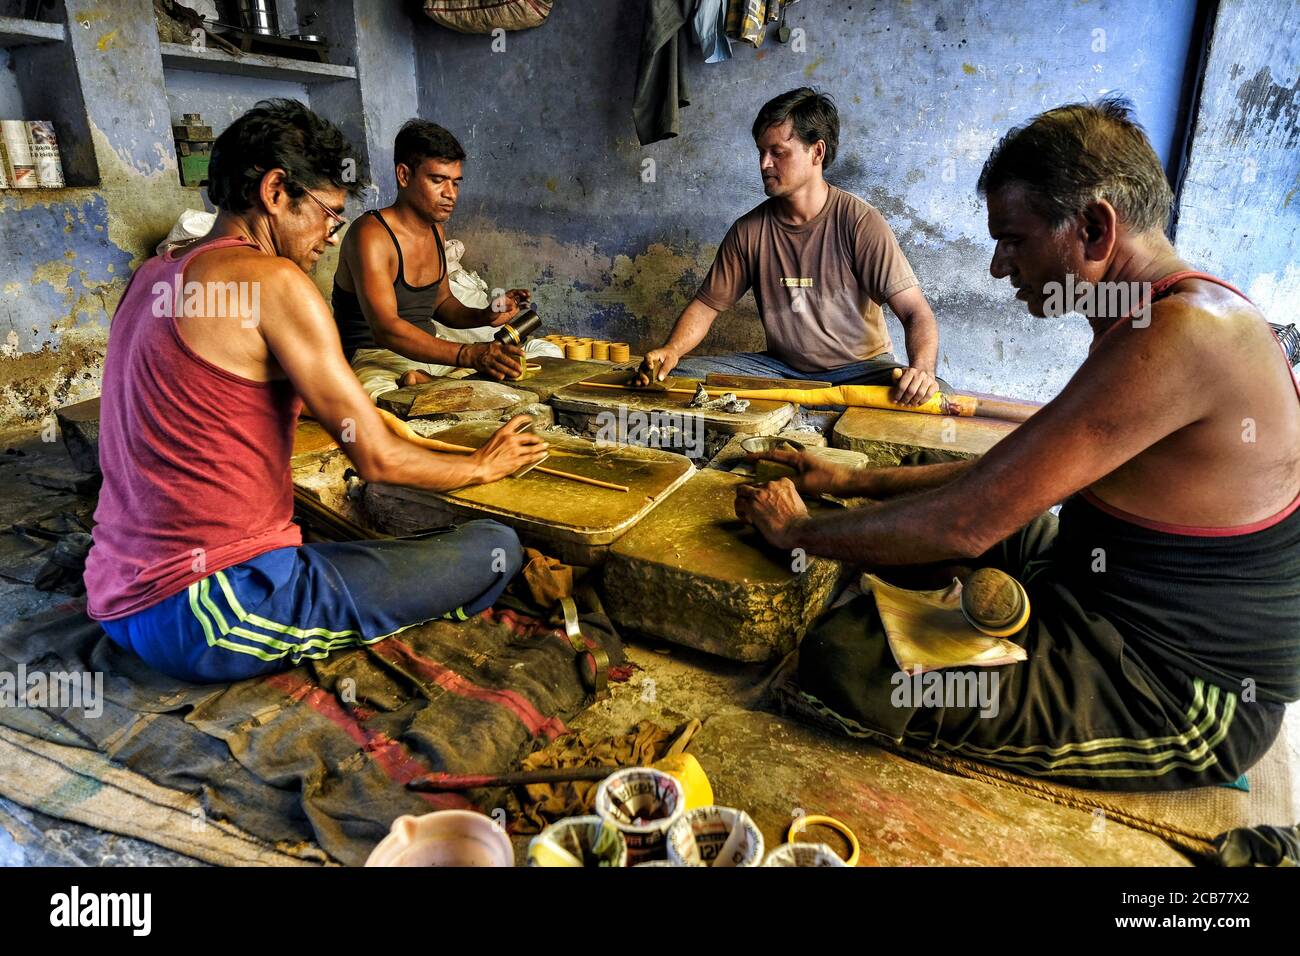 Bundi, Inde - août 2020: Hommes faisant des bracelets dans un petit atelier dans la vieille ville de Bundi le 10 août 2020 à Bundi, Rajasthan. Inde Banque D'Images